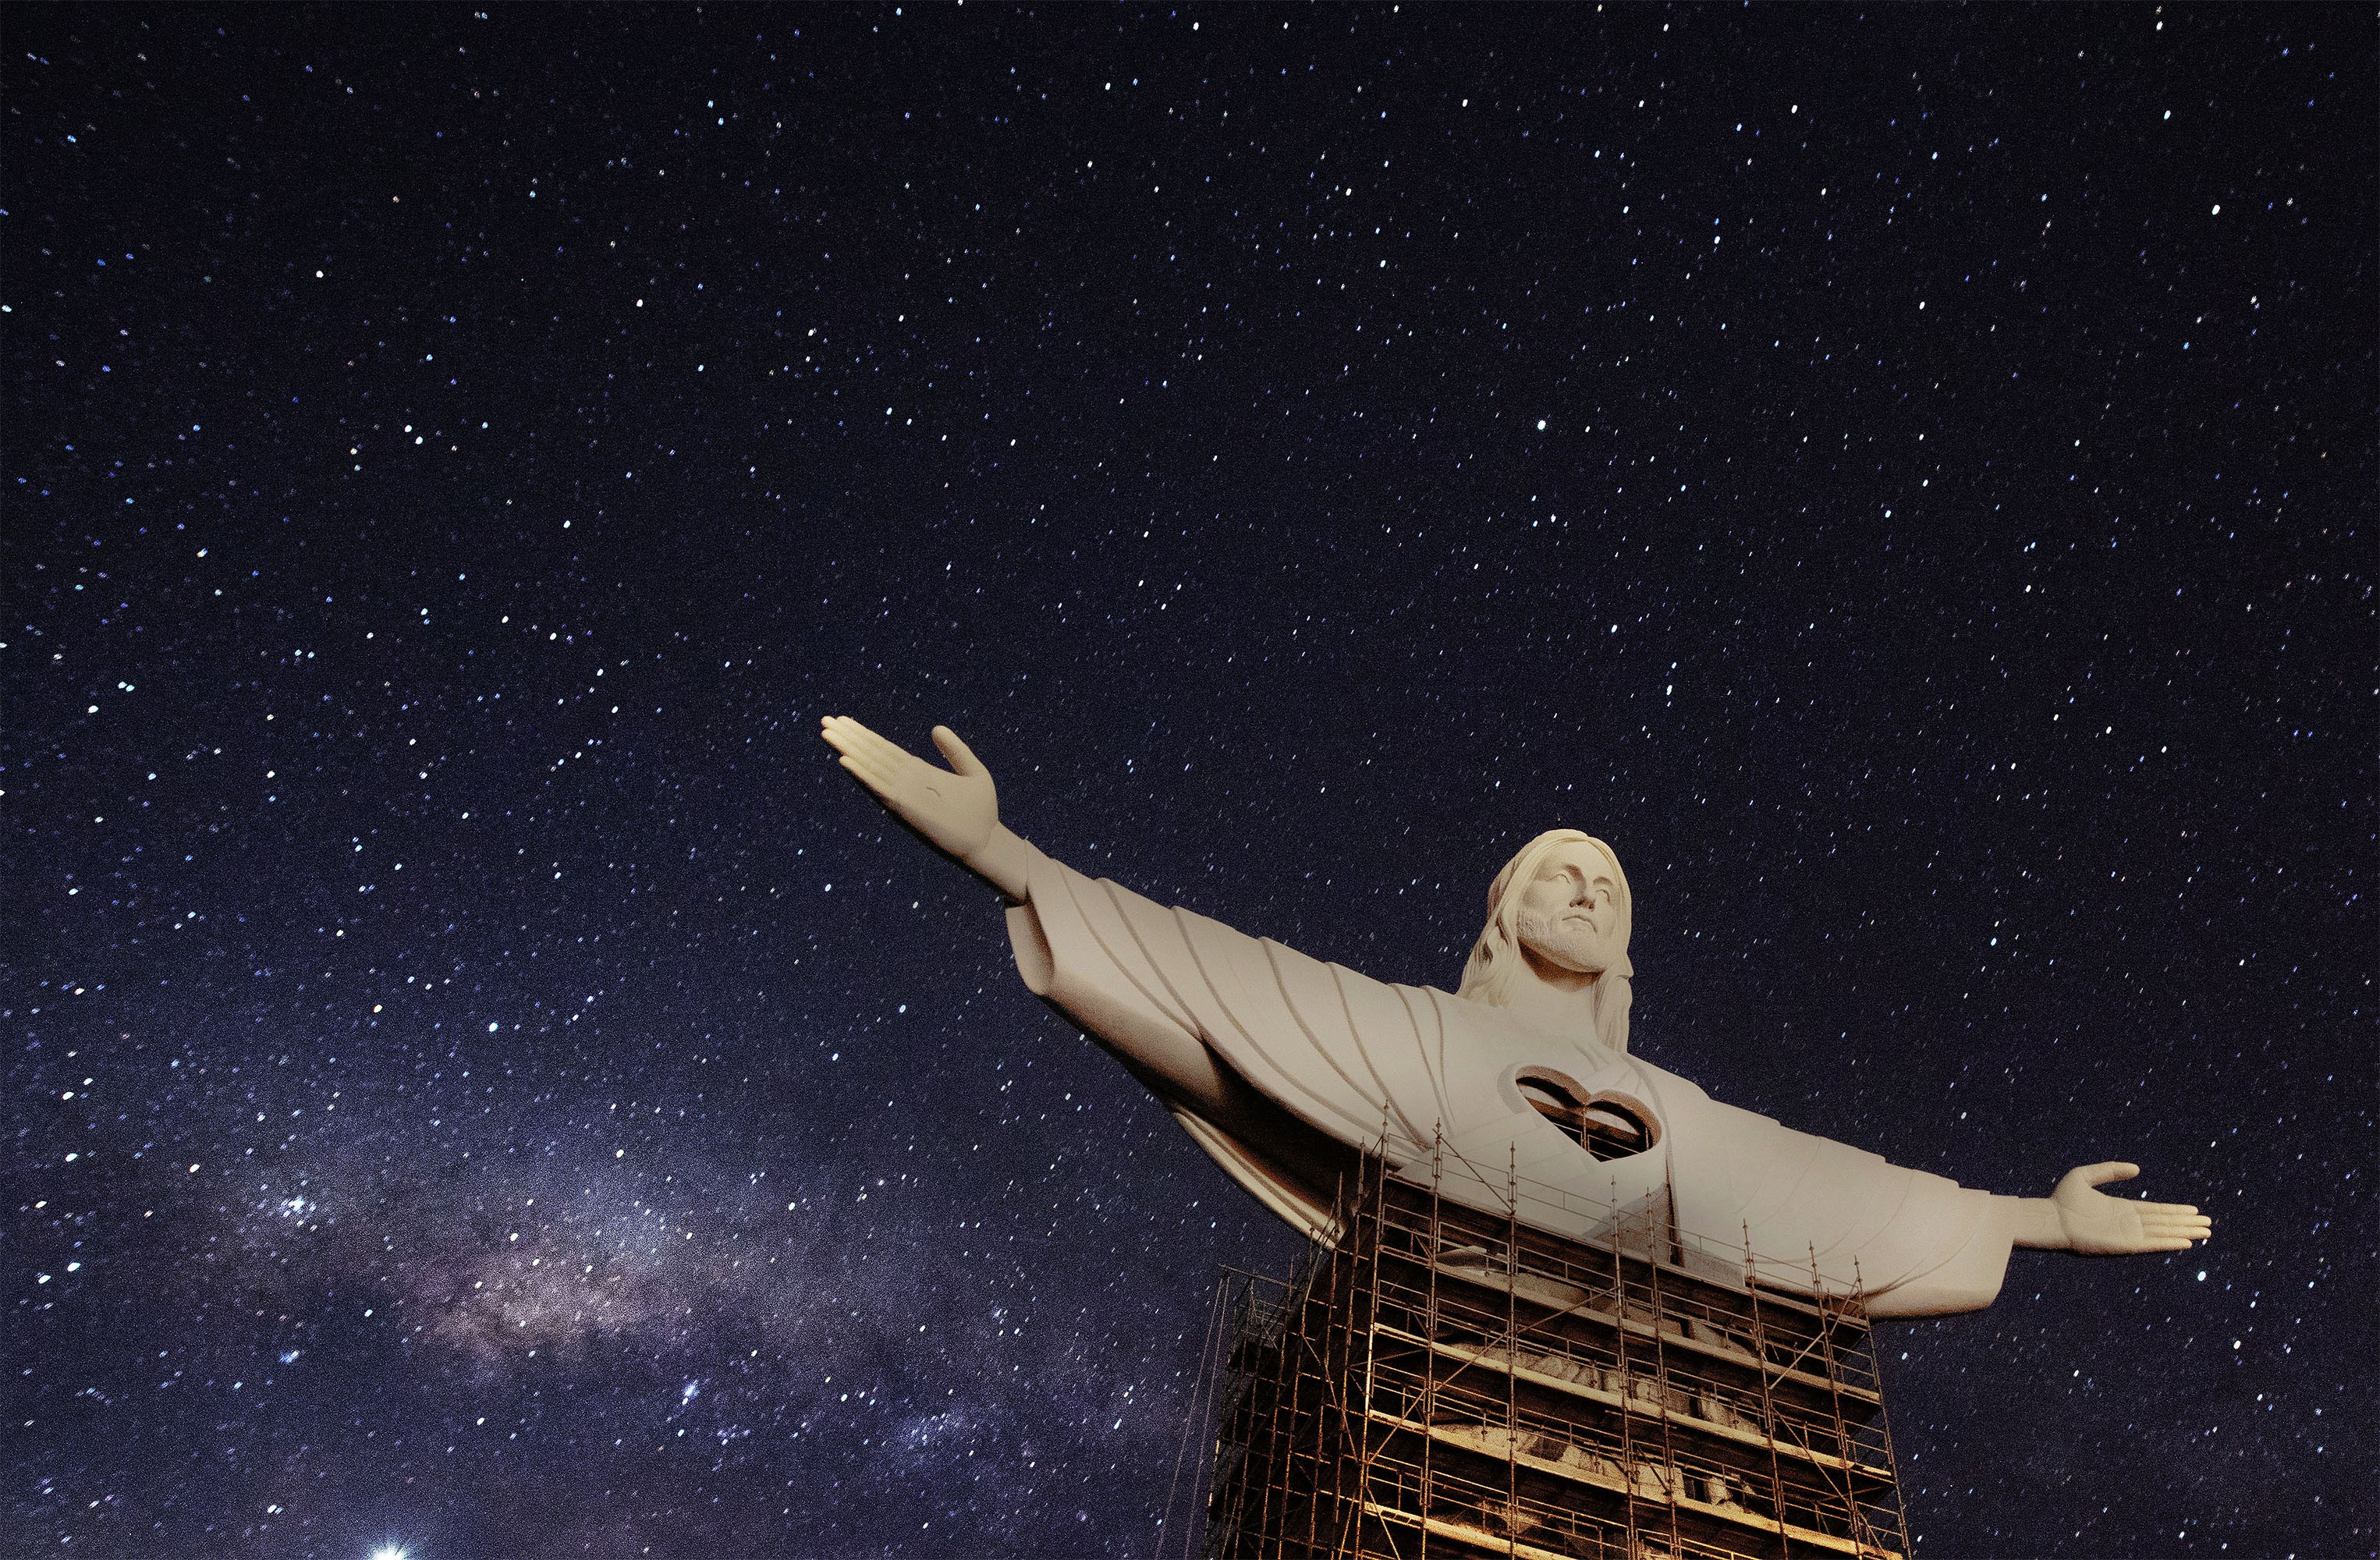 Imagens mostram estátua do Cristo Protetor durante a noite em Encantado veja fotos Portal